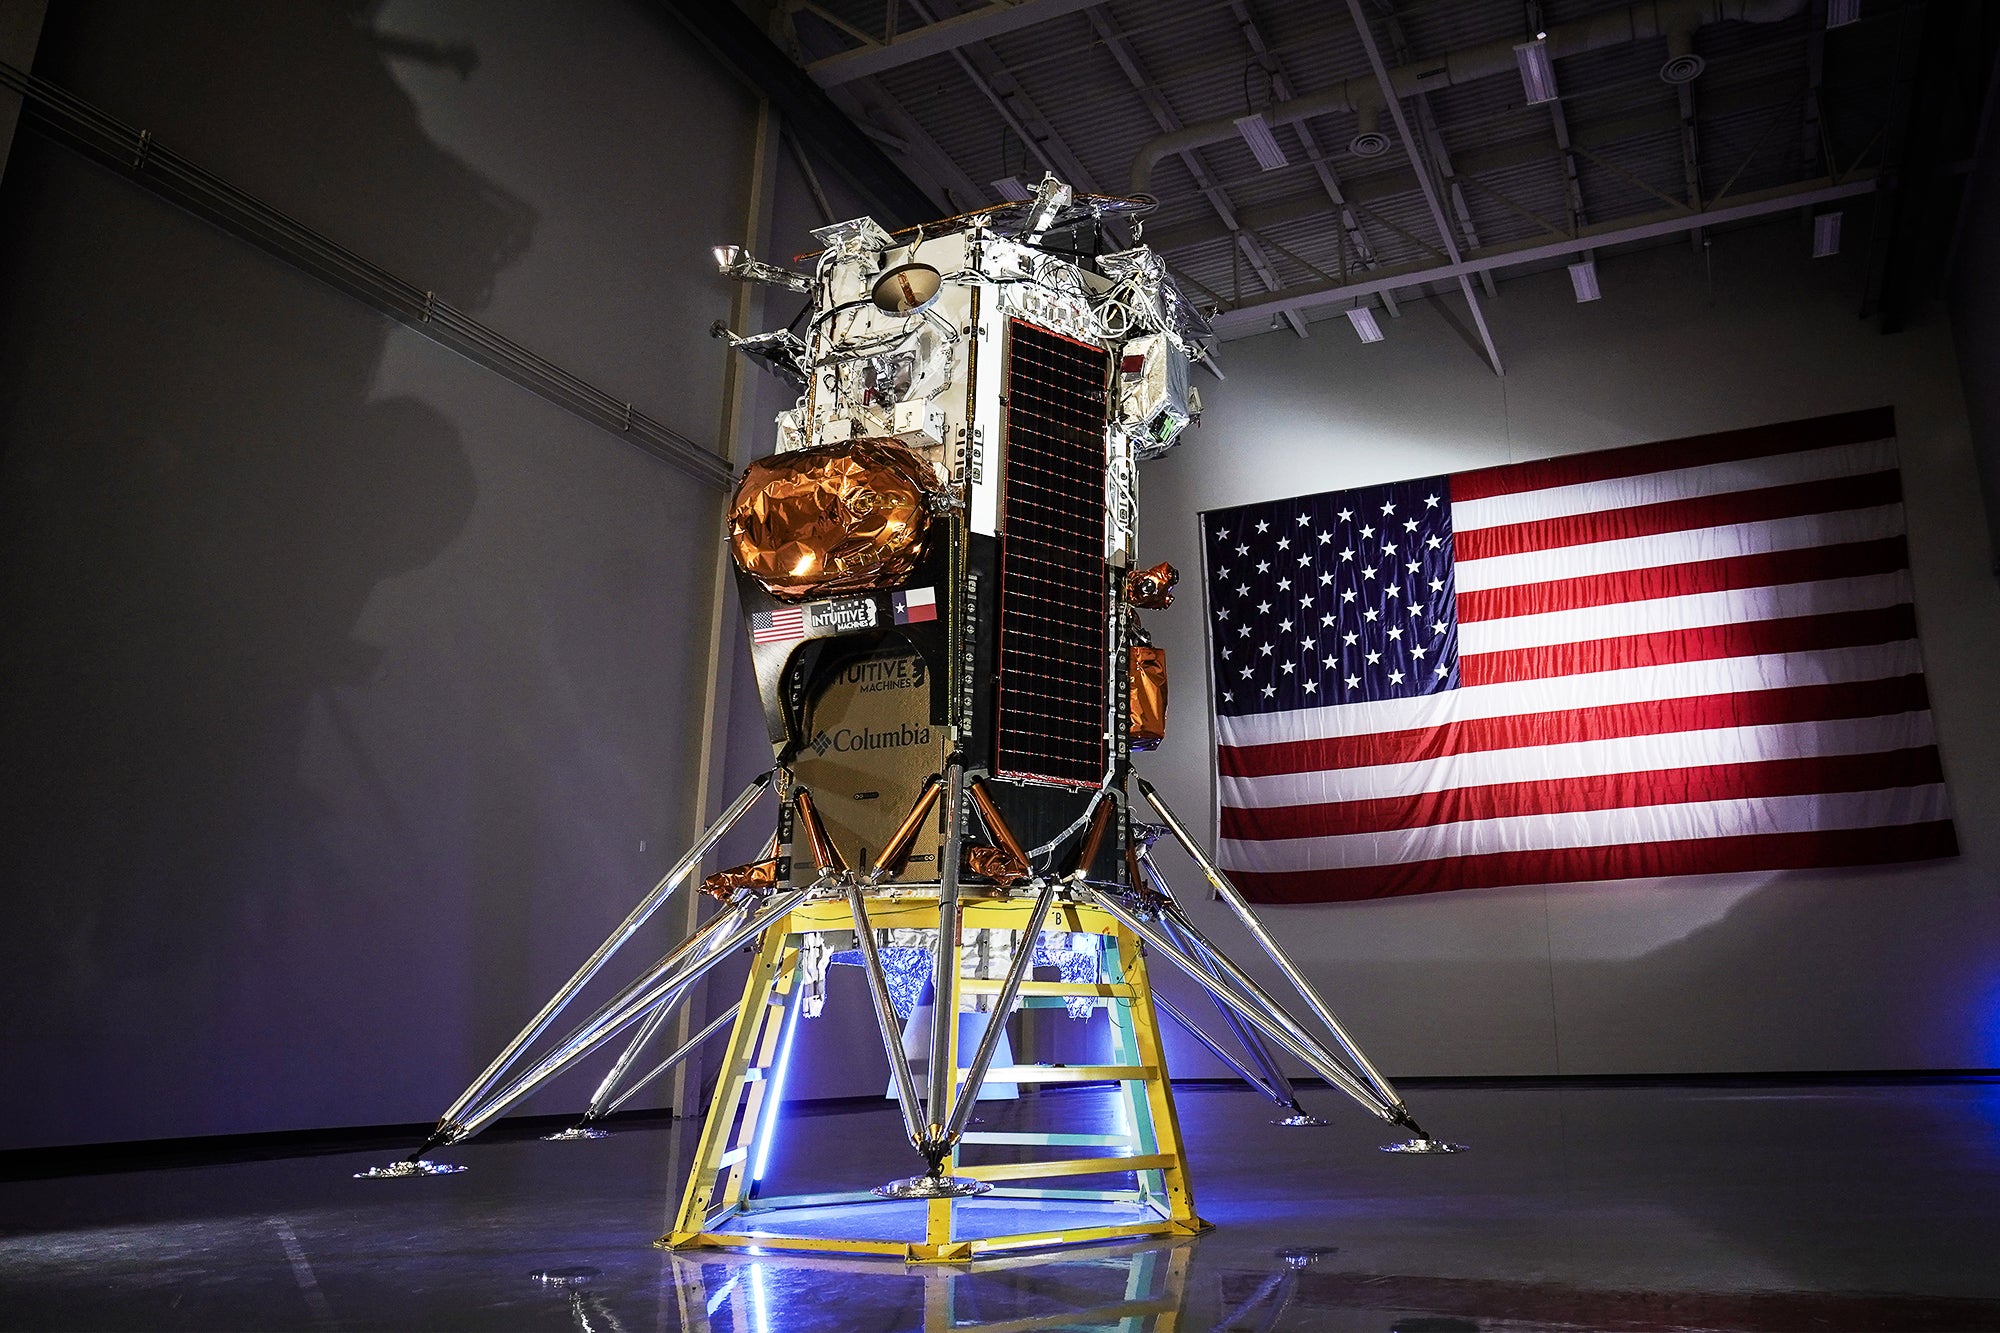 Second Non-public U.S. Moon Lander Readies for Launch
| TC